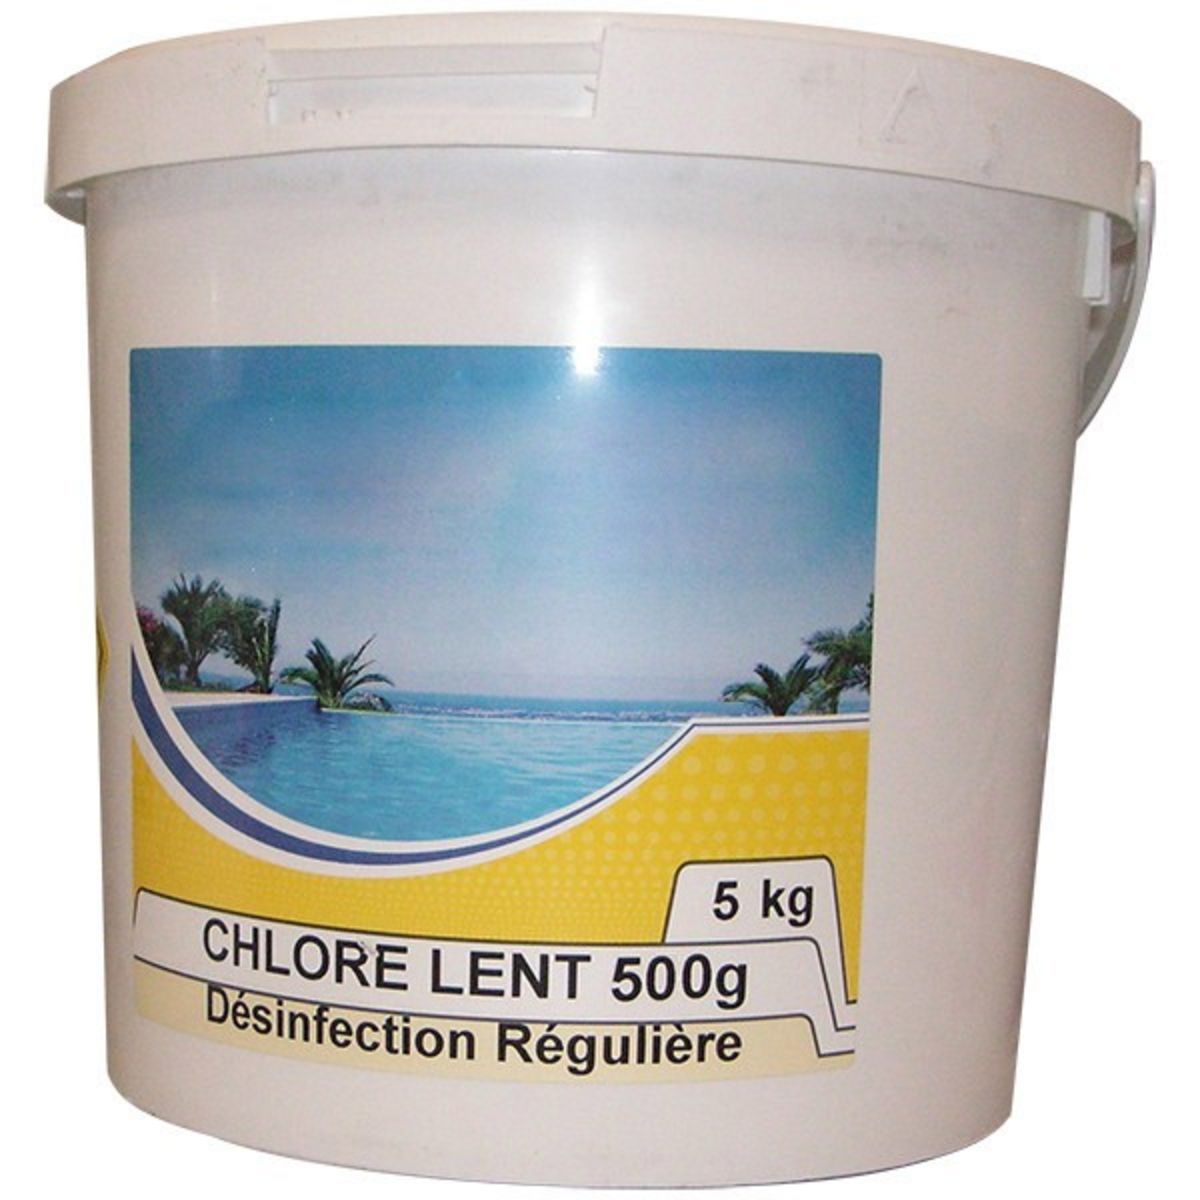 Nmp Chlore lent galet de 500g 5kg - chlore lent 500